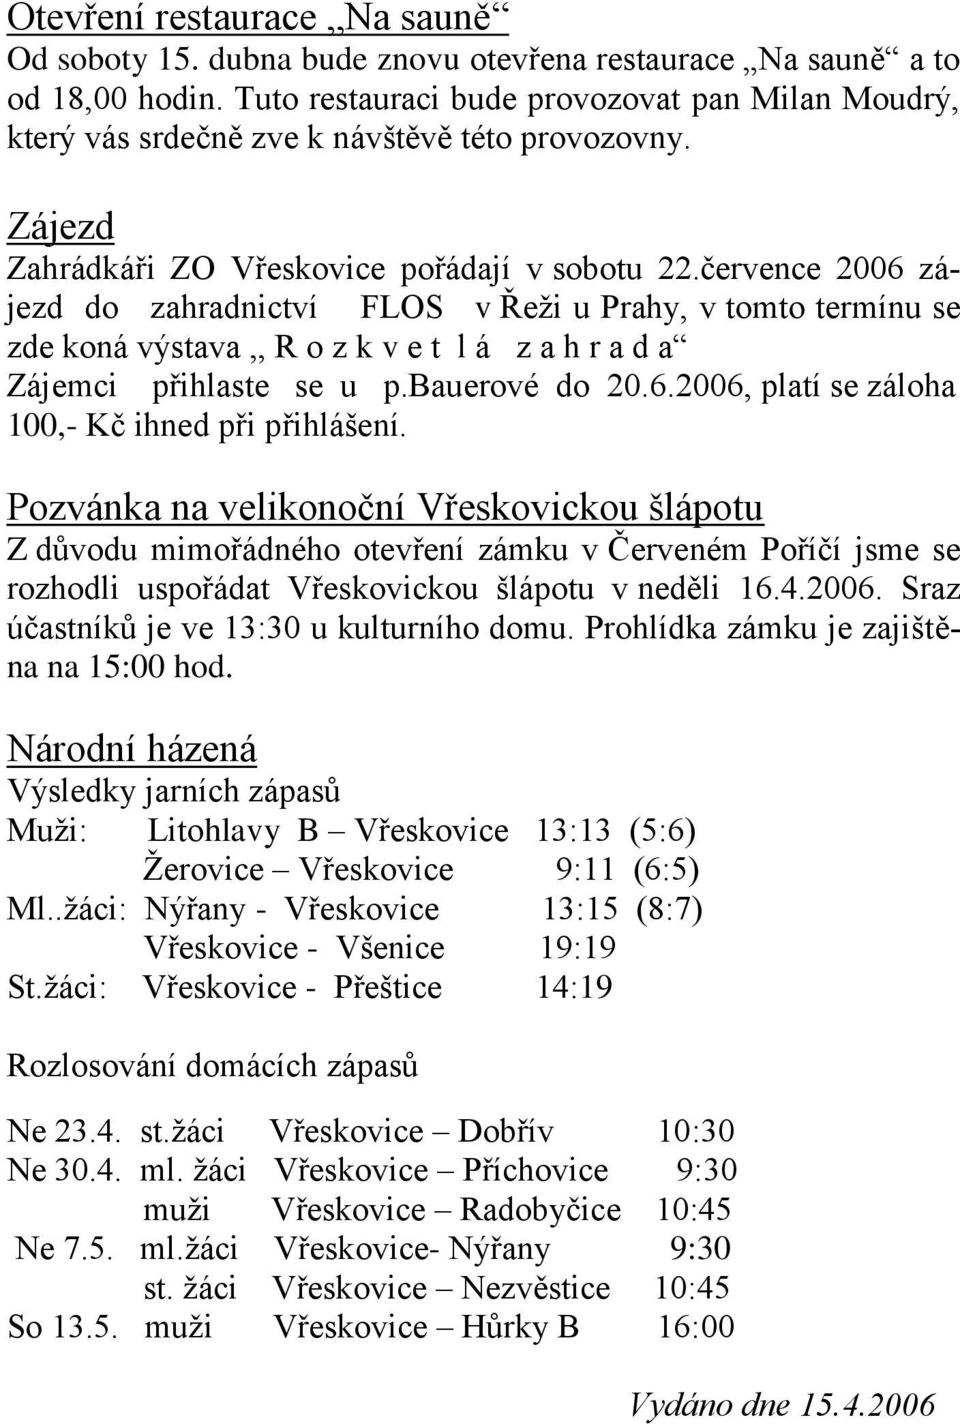 července 2006 zájezd do zahradnictví FLOS v Řeži u Prahy, v tomto termínu se zde koná výstava,, R o z k v e t l á z a h r a d a Zájemci přihlaste se u p.bauerové do 20.6.2006, platí se záloha 100,- Kč ihned při přihlášení.